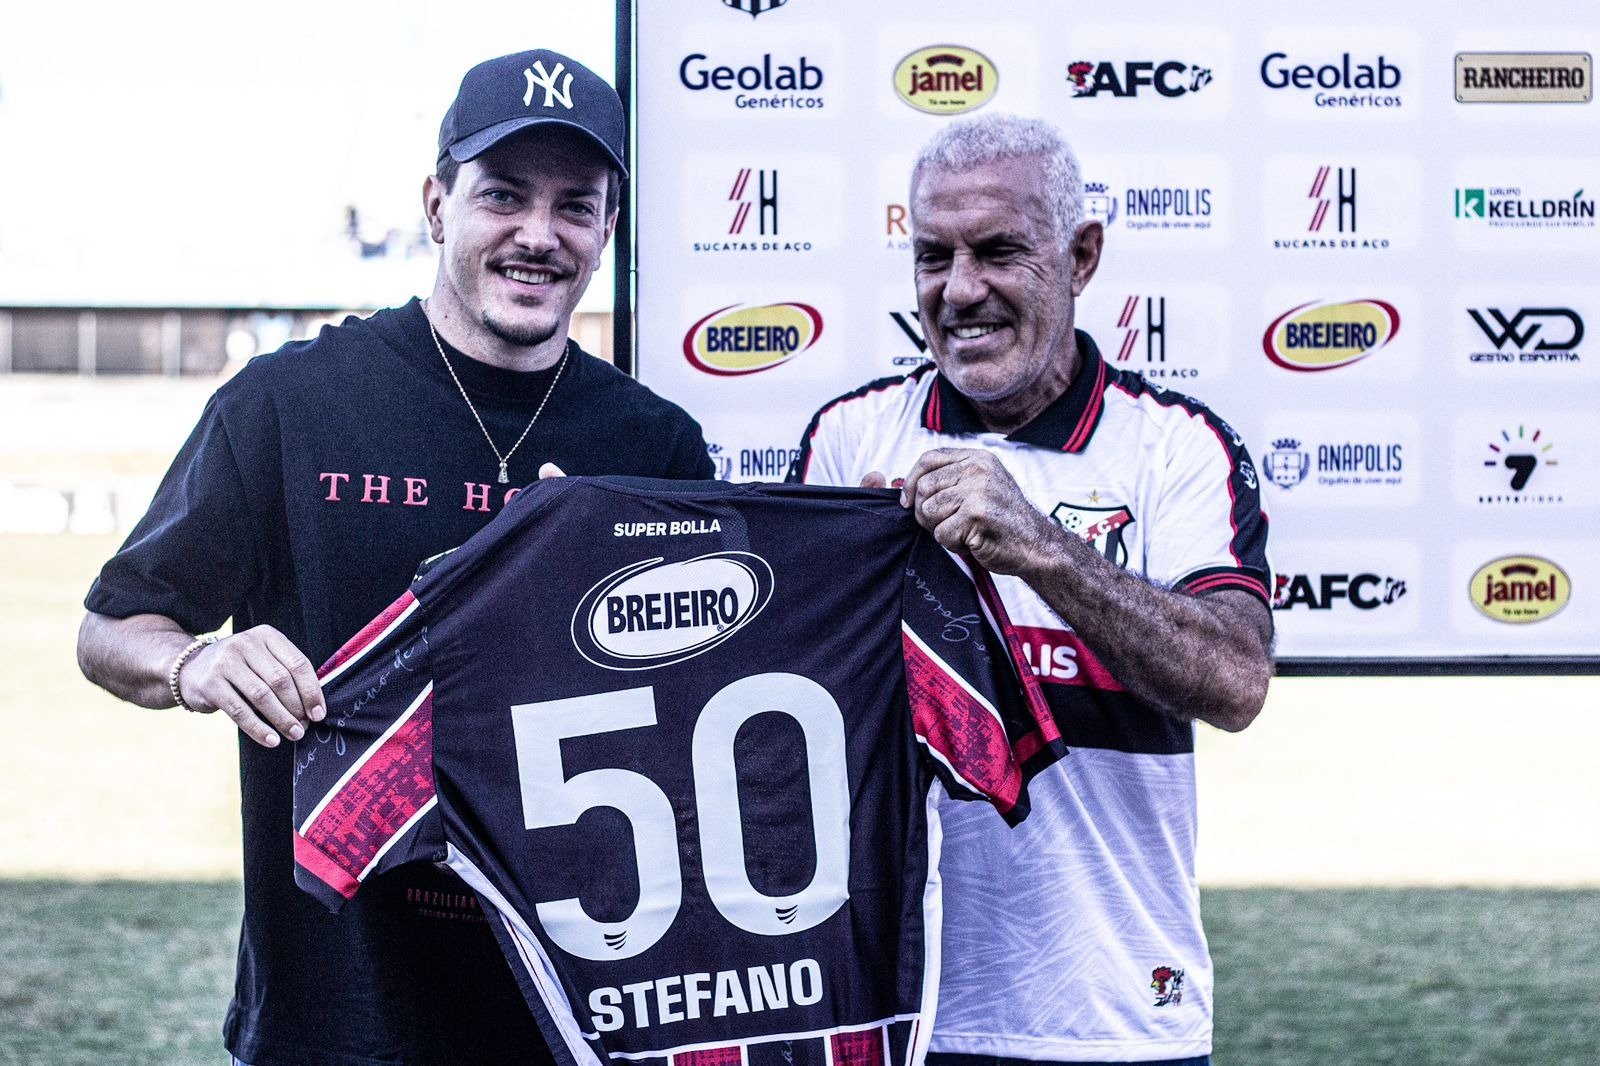 Grande feito! Stefano Moretti celebra marca de 50 jogos pelo Anápolis: "Identificação muito forte"